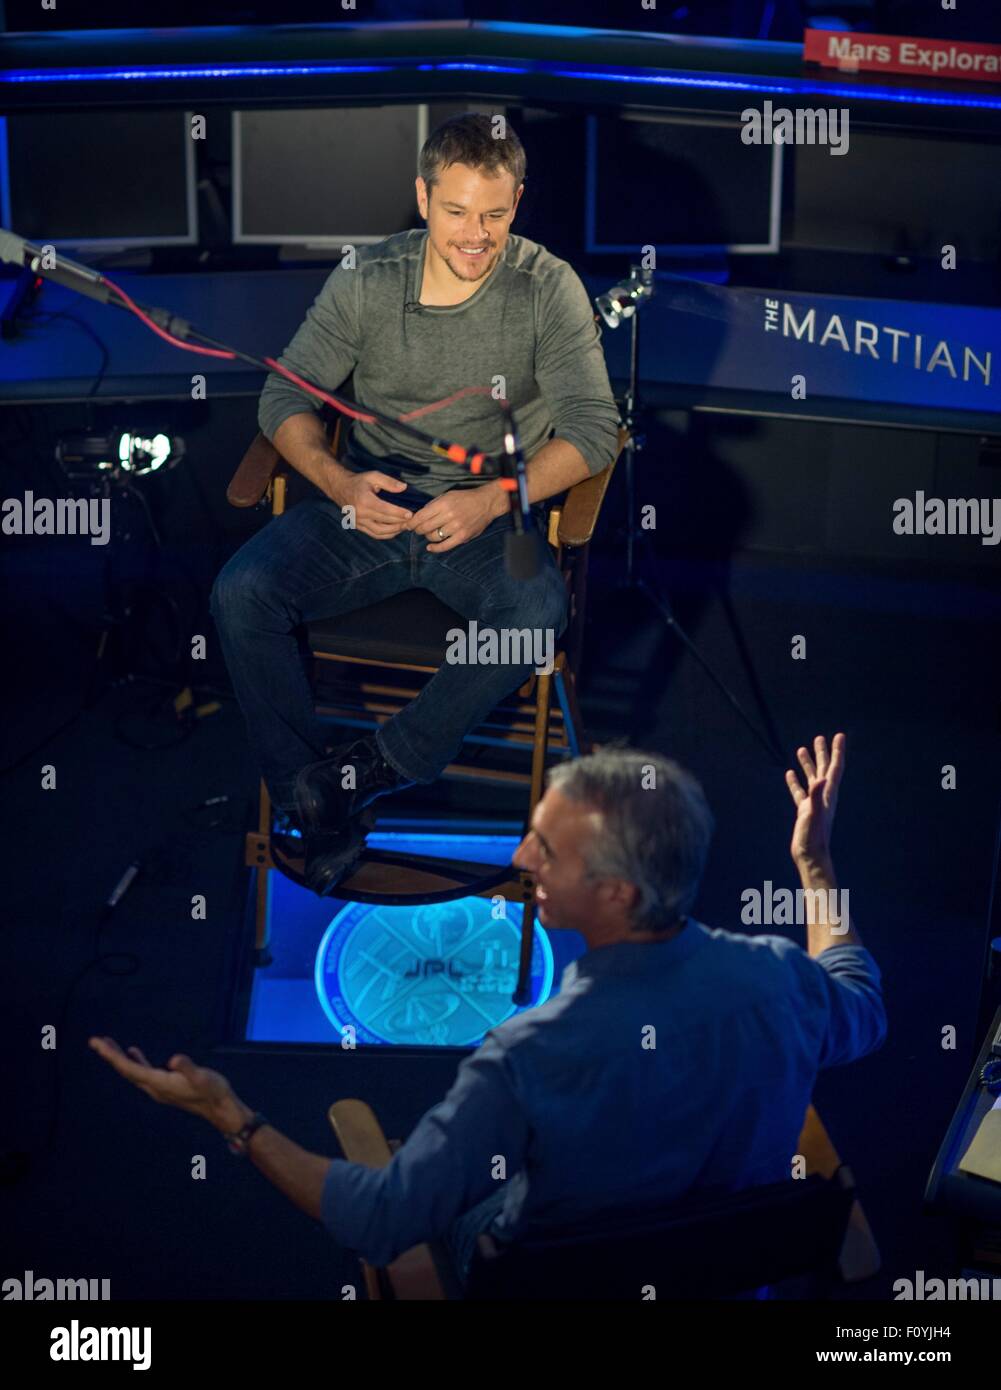 Attore Matt Damon durante una visita al laboratorio di propulsione di jet Agosto 18, 2015 a Pasadena, in California. Damon stelle come astronauta Mark Watney nel film "Il marziano' e visitato con la NASA gli scienziati e gli ingegneri che hanno servito come consulenti tecnici sulla pellicola. Foto Stock